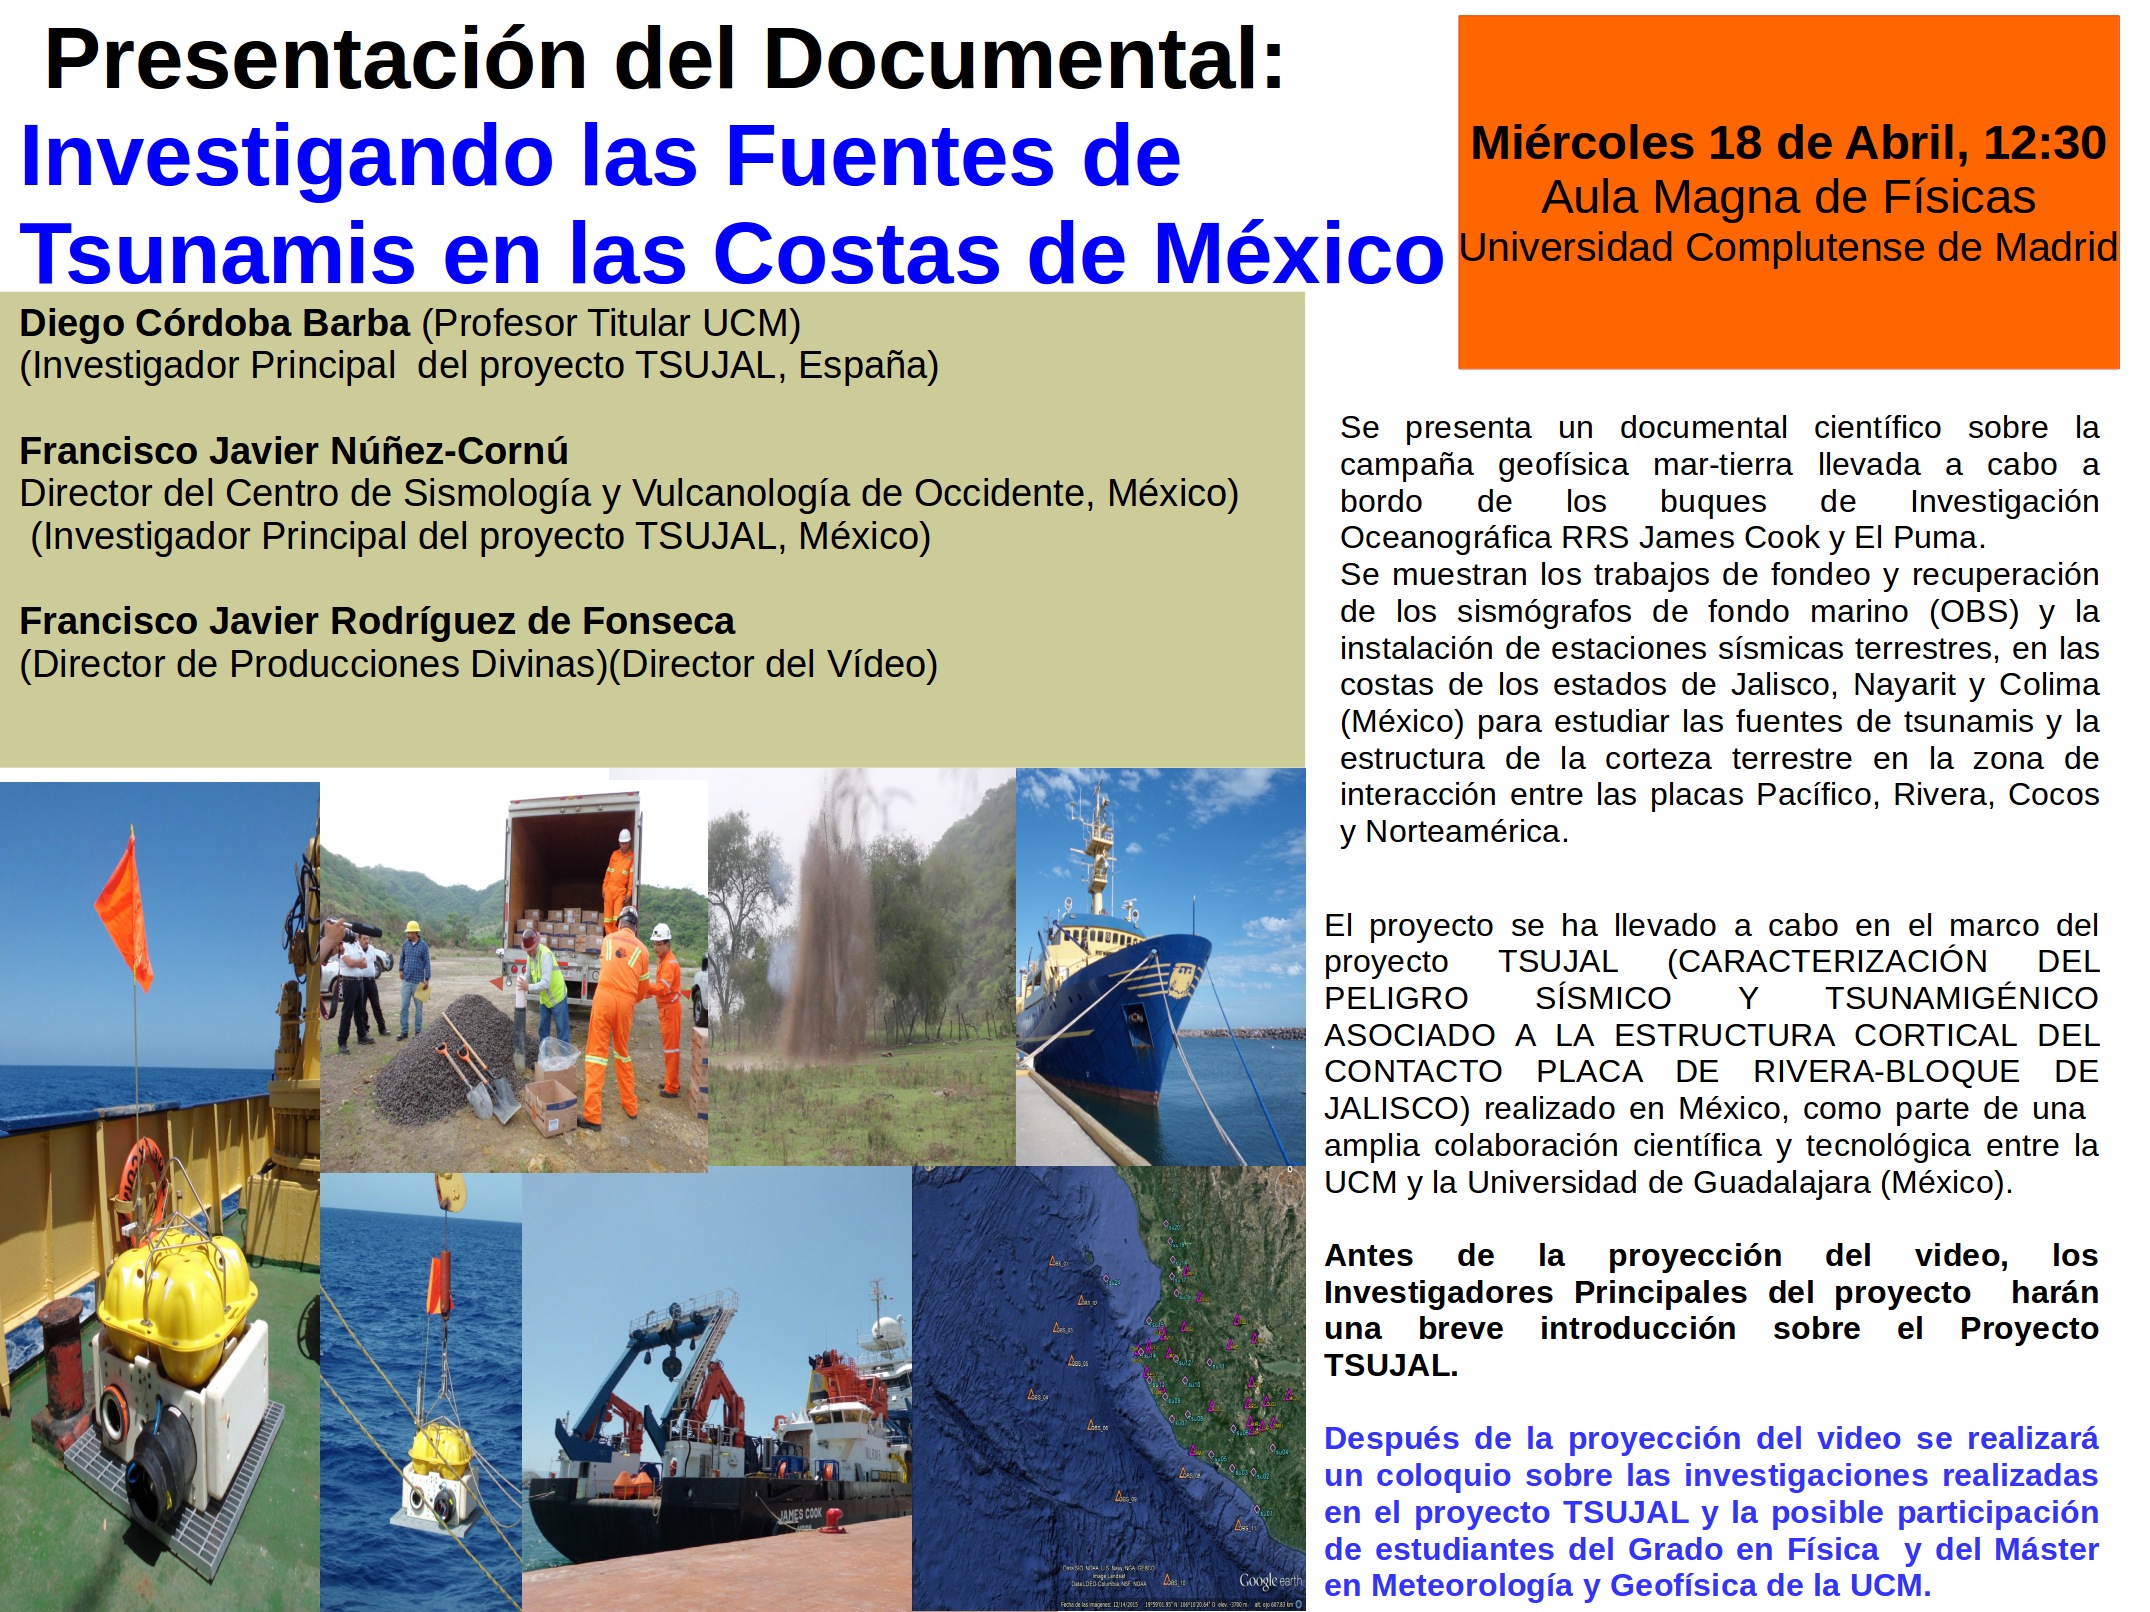 Presentación Documental Investigando las Fuentes de  Tsunamis en las Costas de México. Diego Córdoba Barba